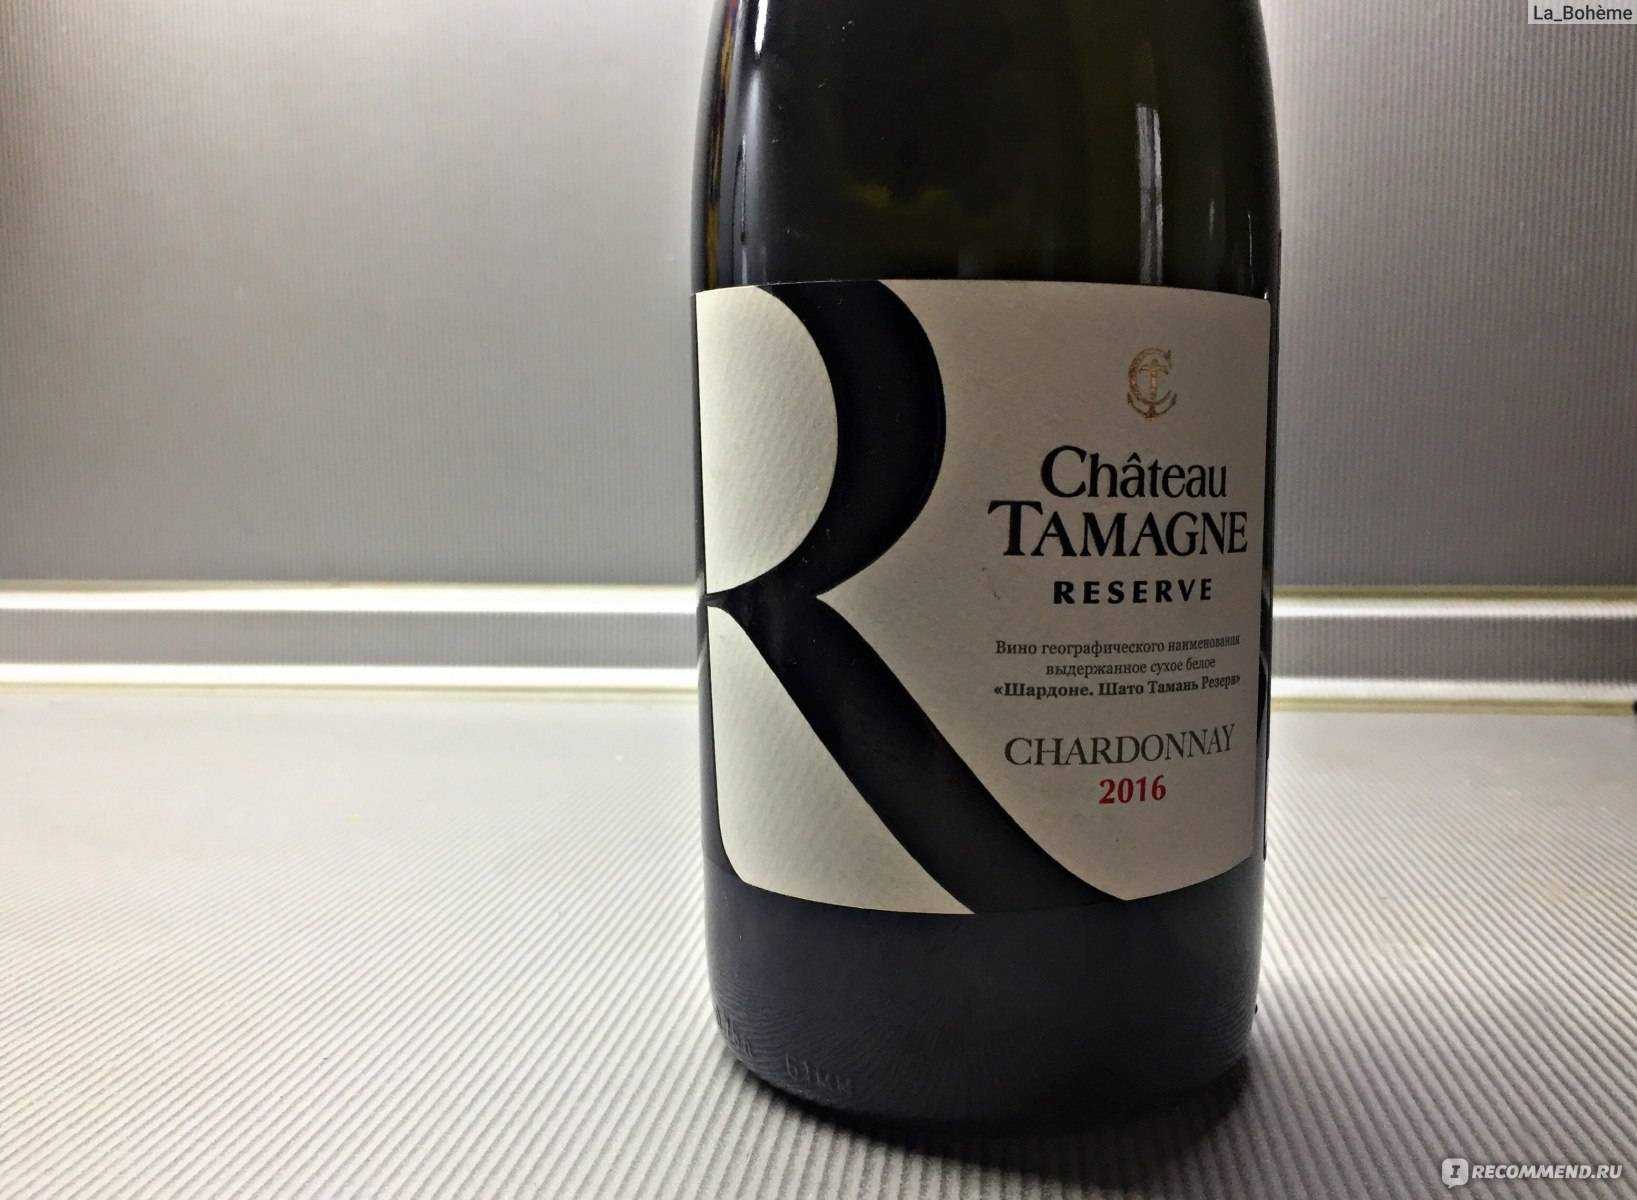 Chateau tamagne - российское вино, которое стоит оценить